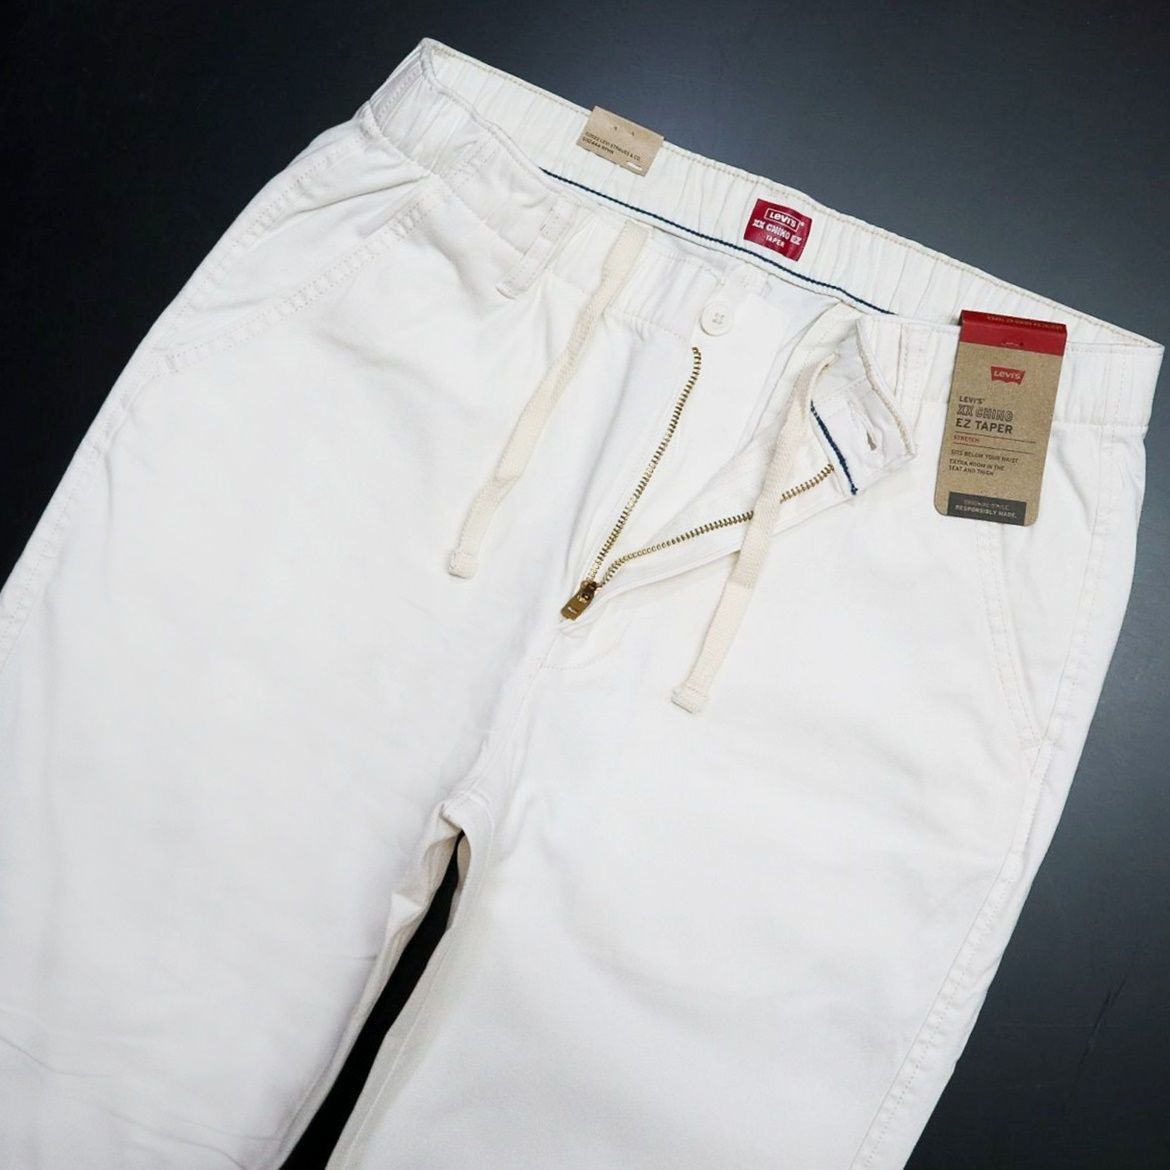 * Levi's Levis XX CHINO новый товар мужской стрейч простой конус брюки из твила длинные брюки M размер [A10401-0020-M] 4 .*QWER*